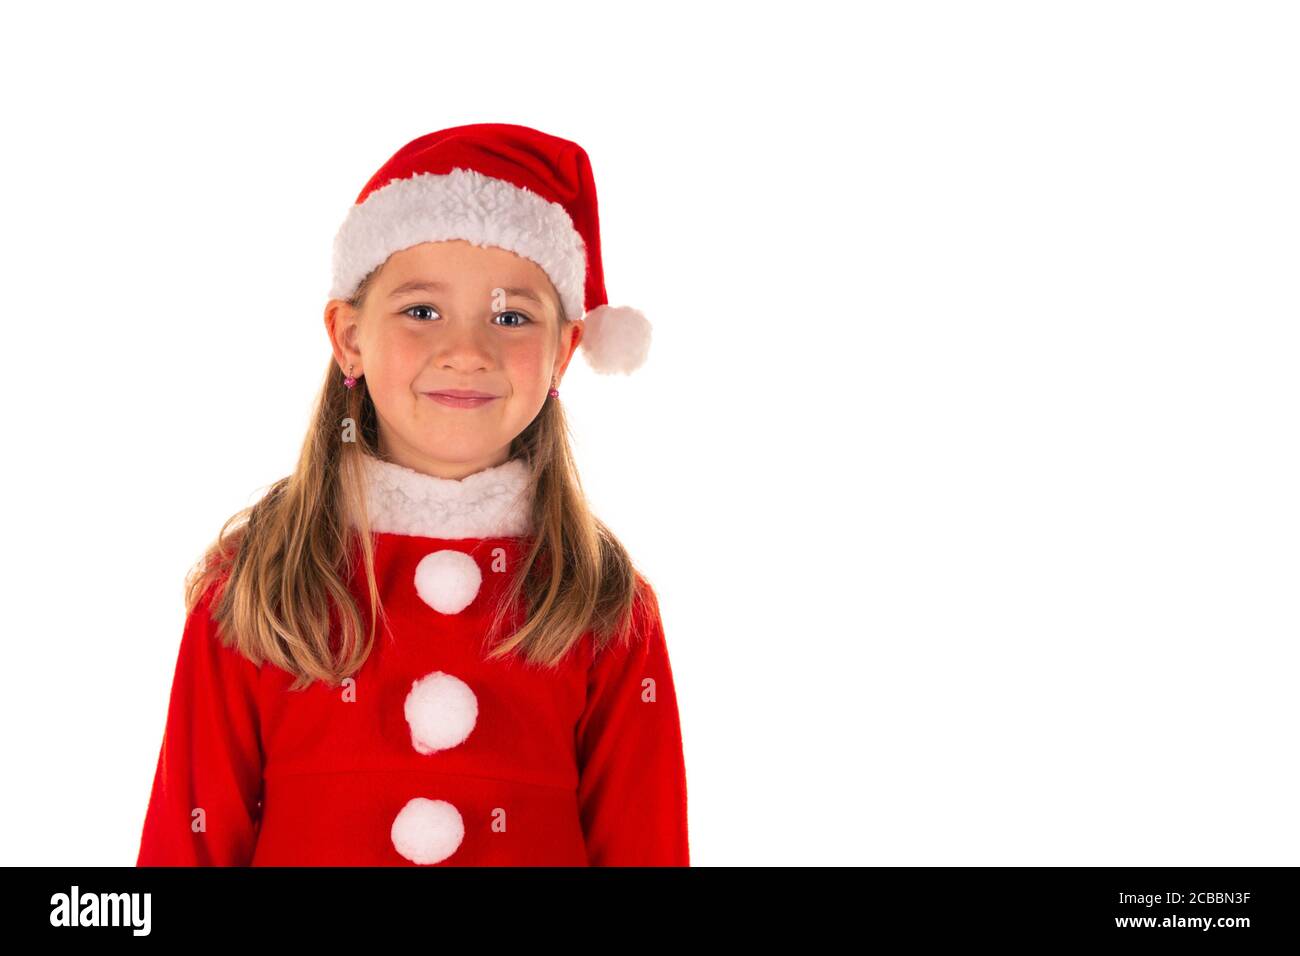 Portrait der schönen fröhlichen 8 Jahre altes Mädchen lächelnd und Tragen rote weihnachtskostüm mit rotem Kleid und einem Weihnachtsmann Claus Hut isoliert auf weiß Stockfoto